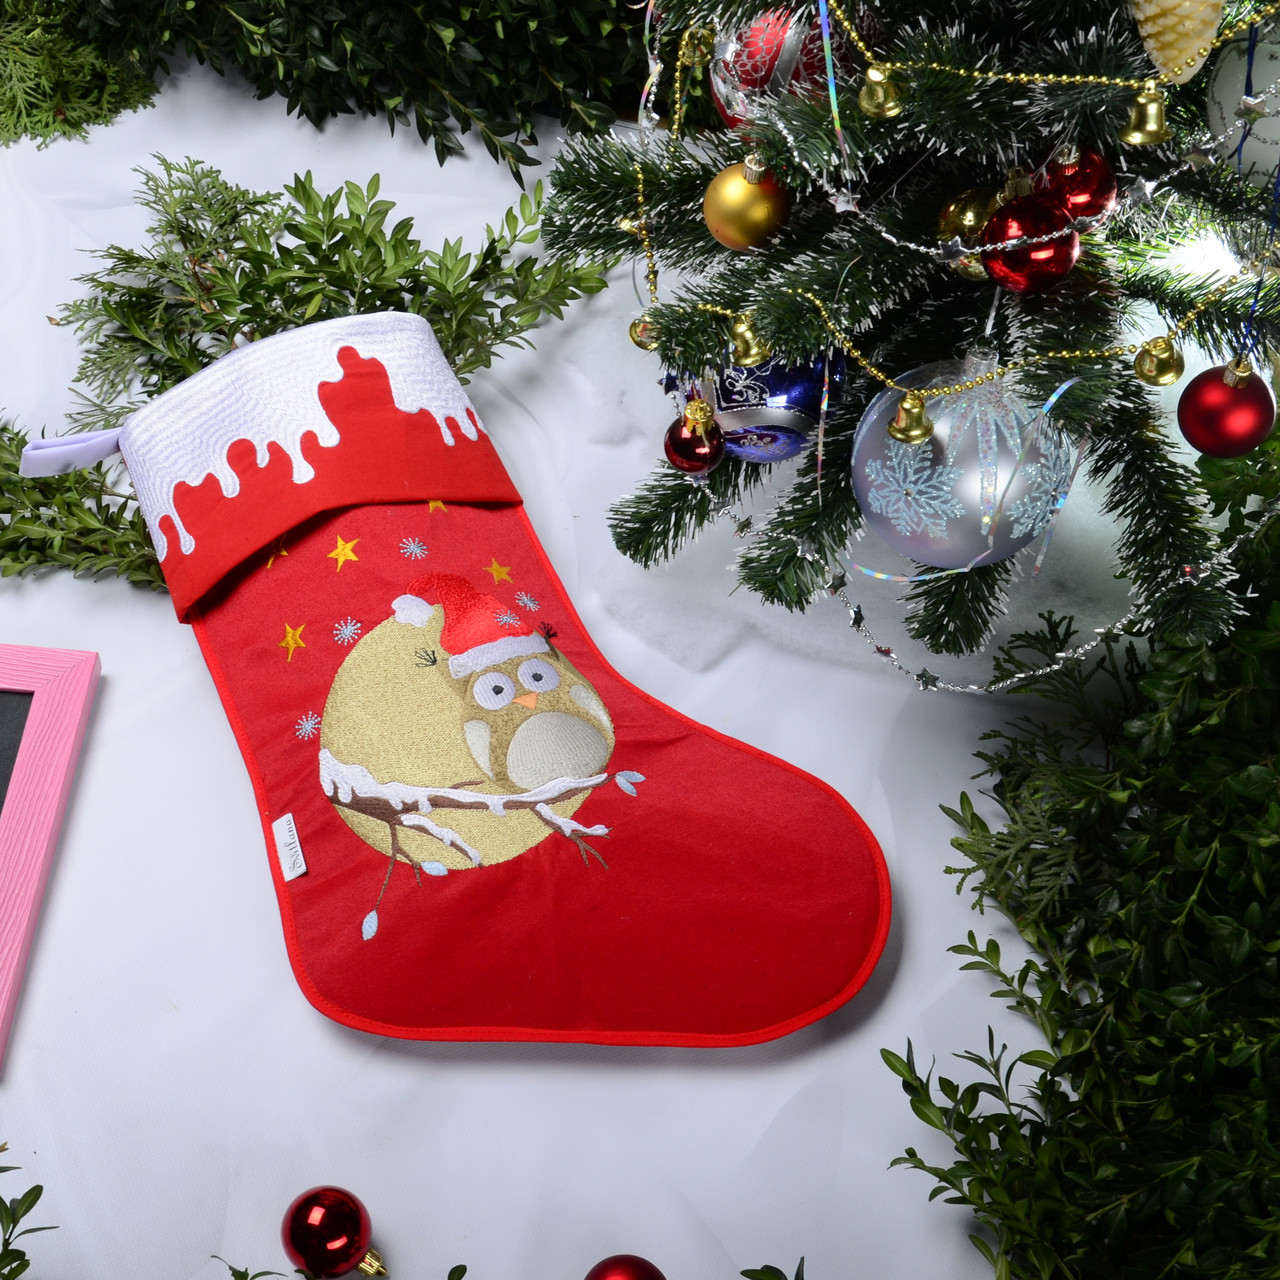 Новорічний подарунковий чобіт, Різдвяний носок, з вишивкою, червоного кольору, вишивка — сова на гілці.